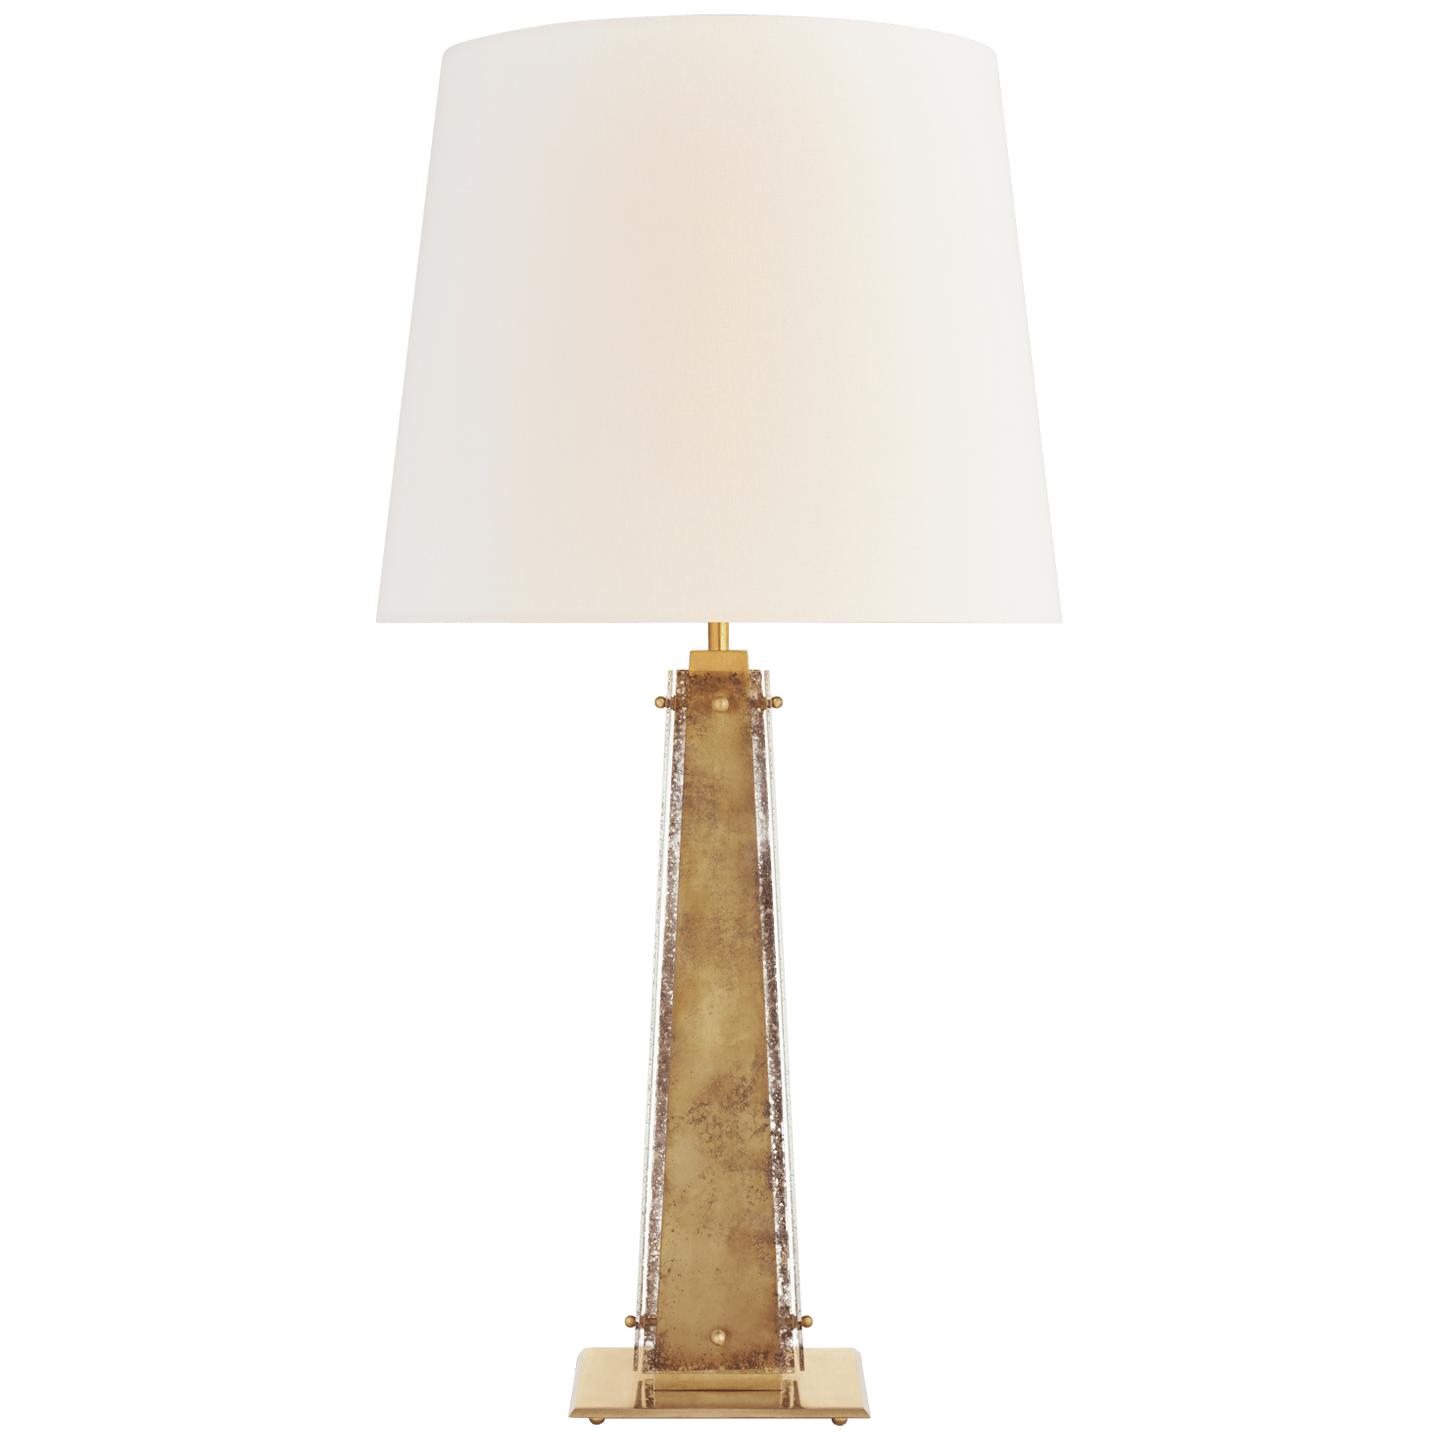 Купить Настольная лампа Cadence Large Table Lamp в интернет-магазине roooms.ru